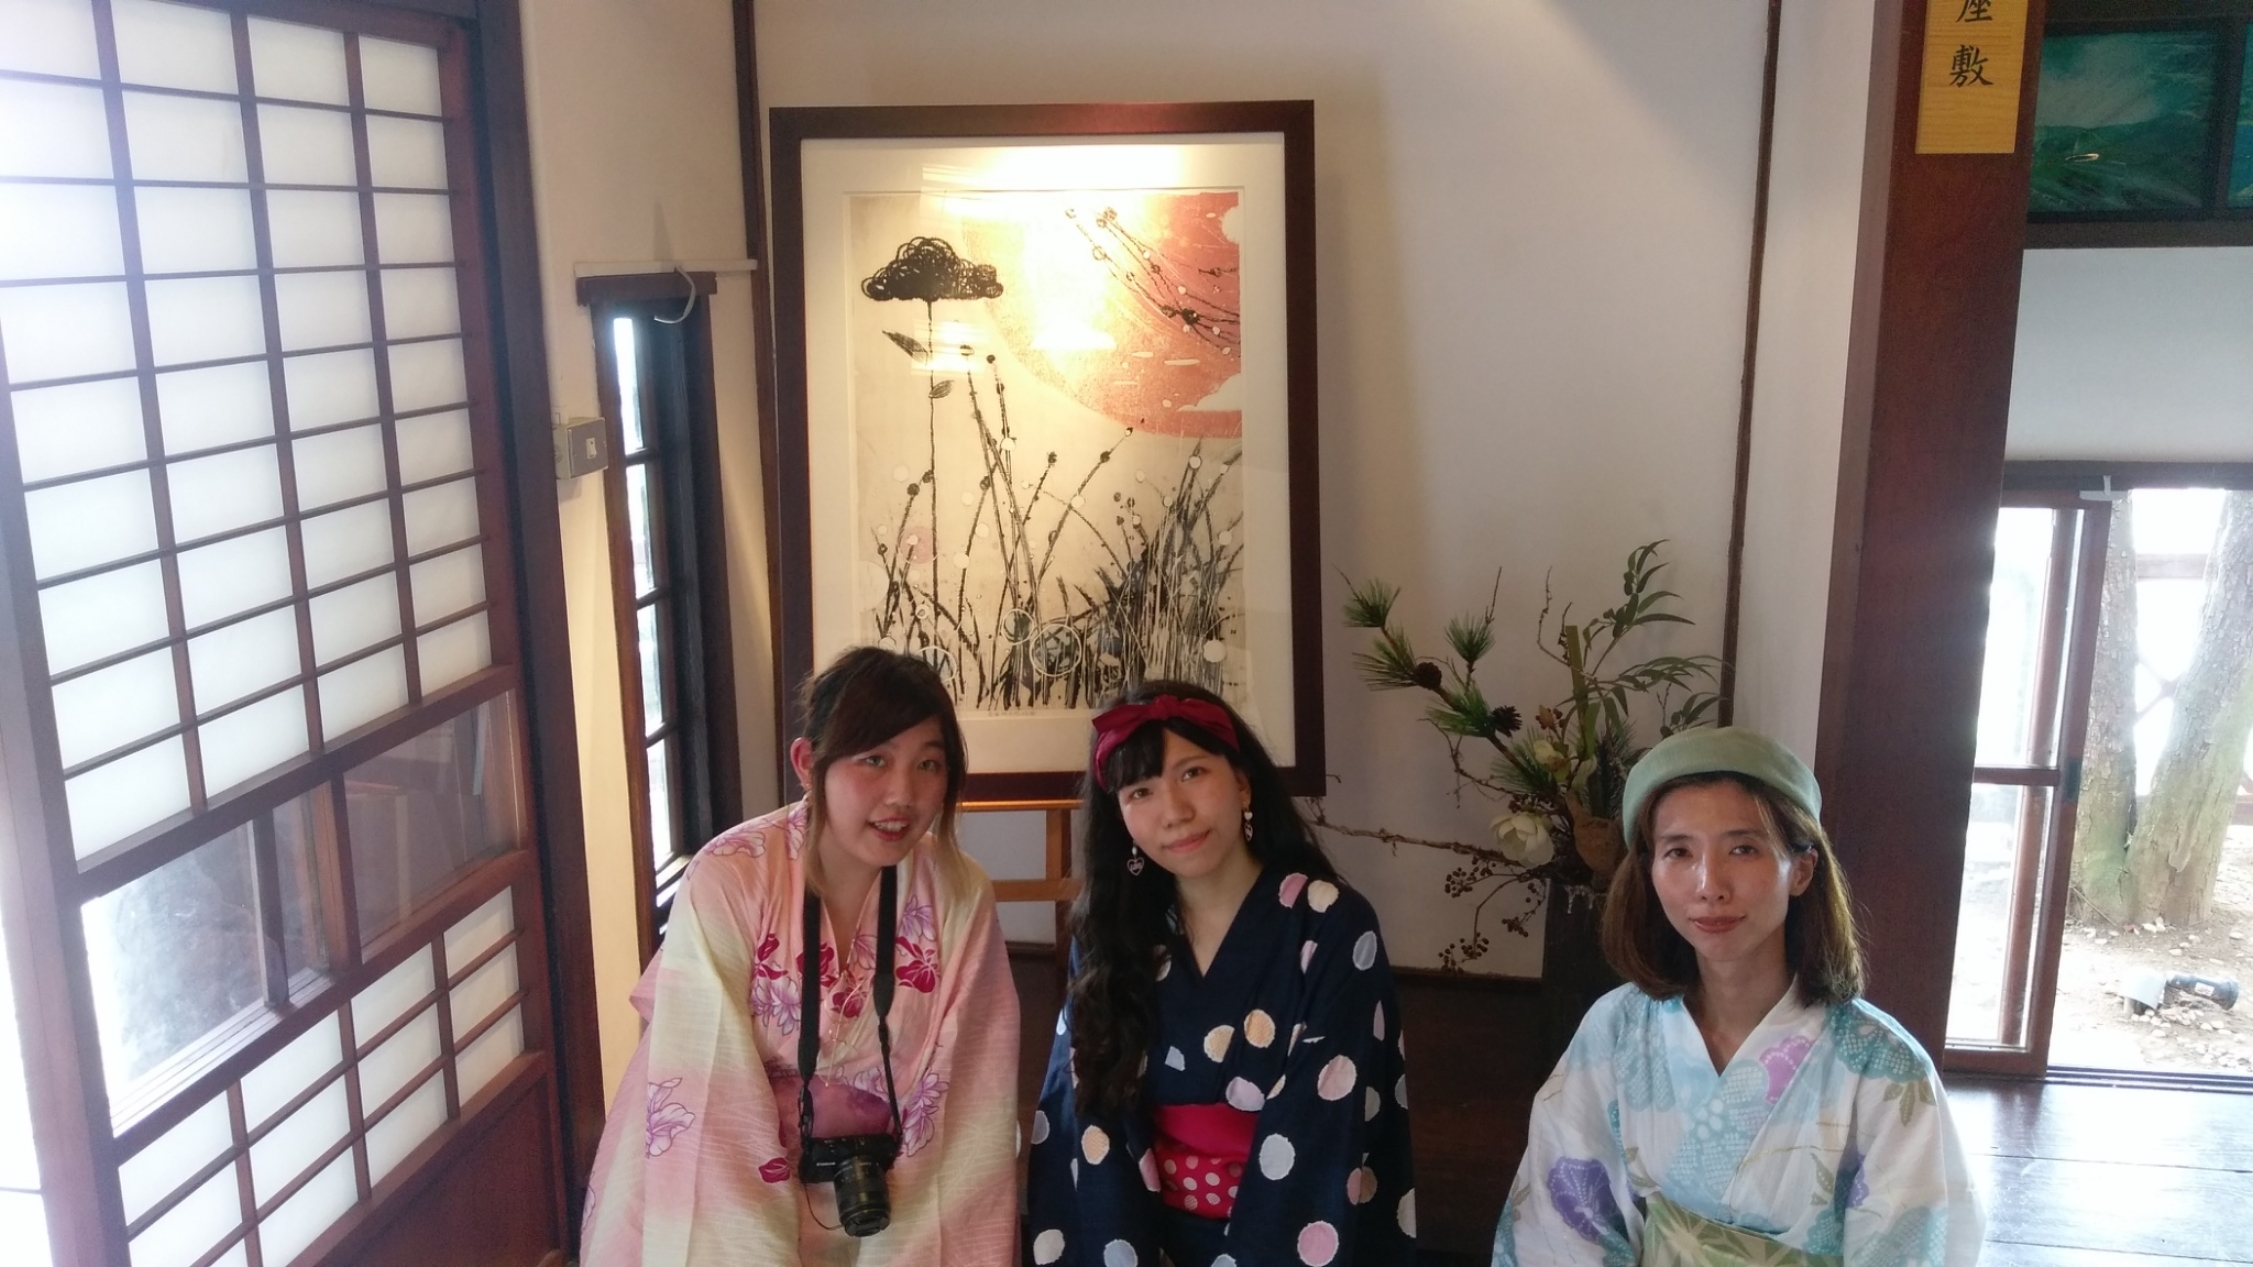 這朵雲－劉裕芳夏日展作品，淡水街長多田榮吉故居展出駐村藝術家版畫，搭配日式浴衣體驗別有一番風情。